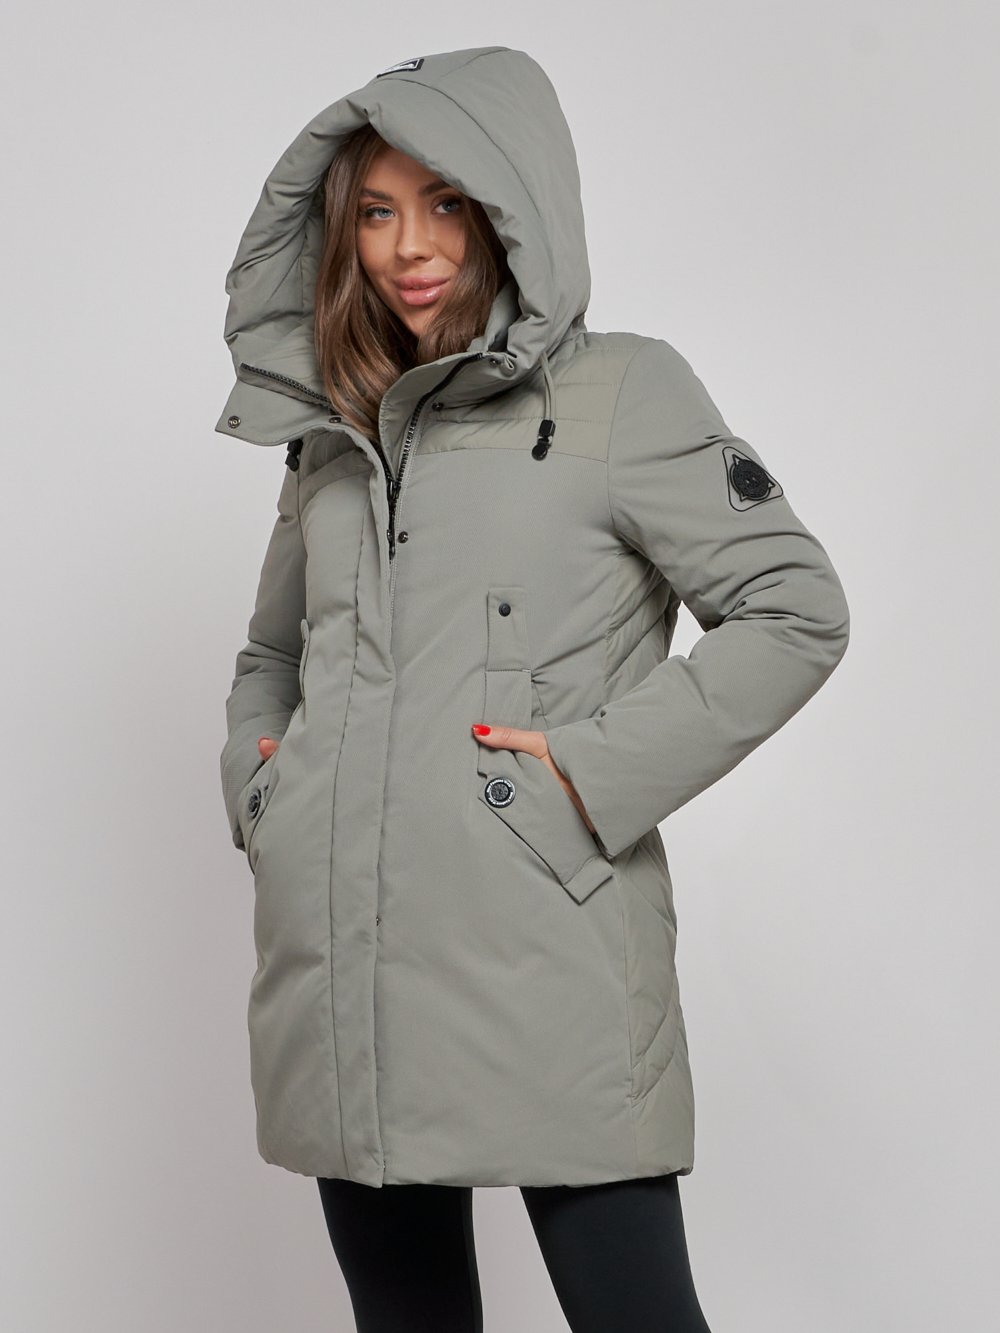 Купить куртку женскую оптом от производителя недорого в Москве 589003Kh 1